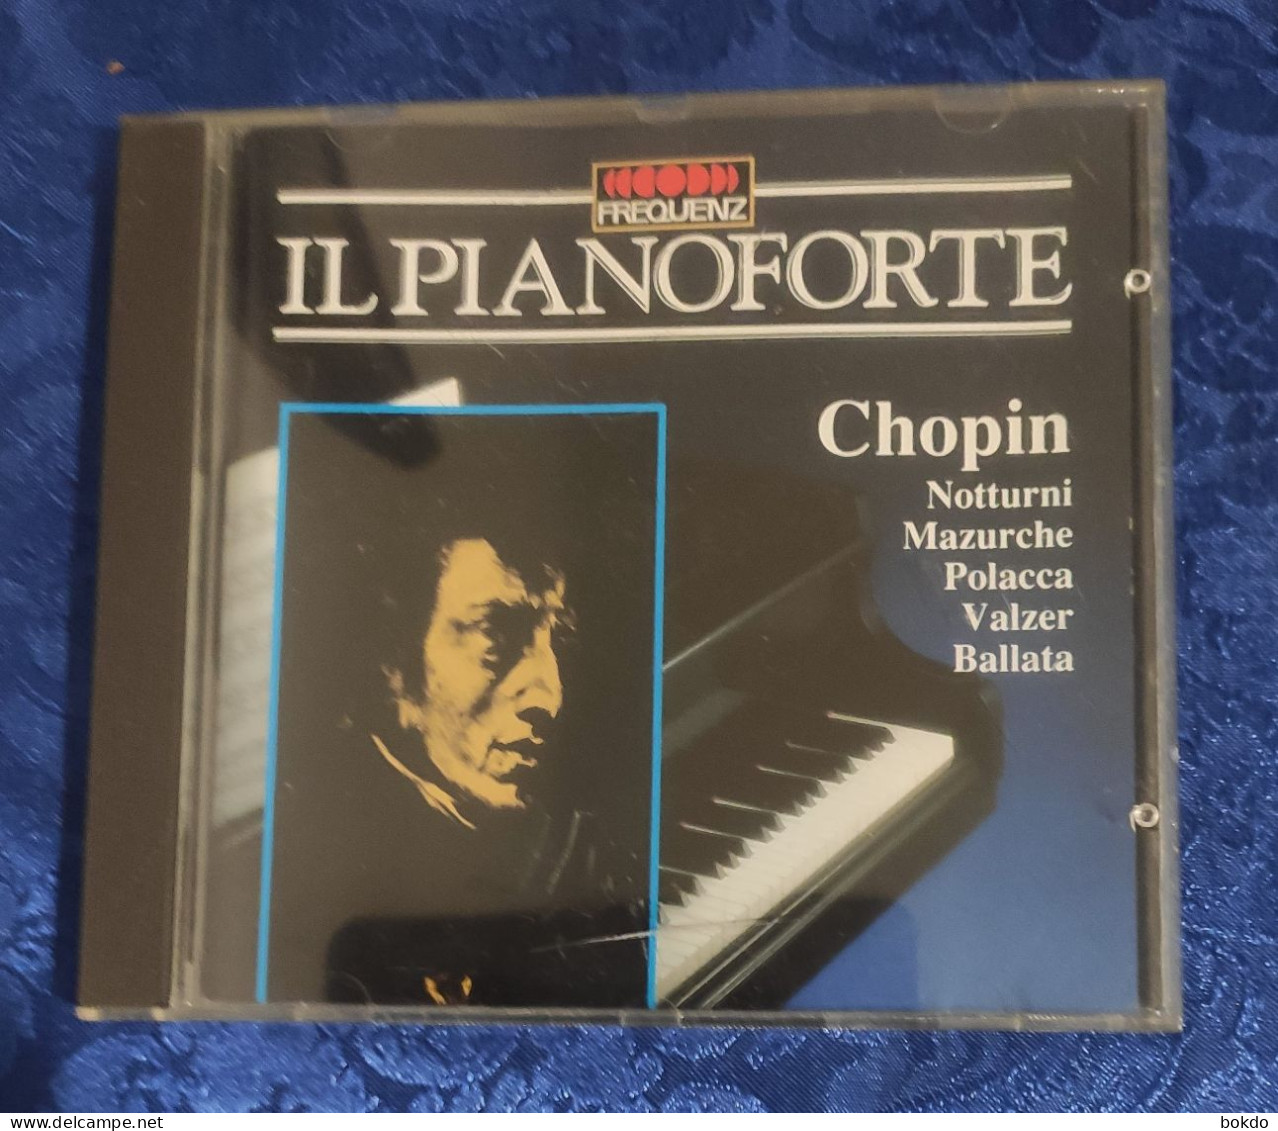 Chopin - Il Pianoforte - Notturni - Mazurche - Polacca - Valzer - Ballata - Clásica